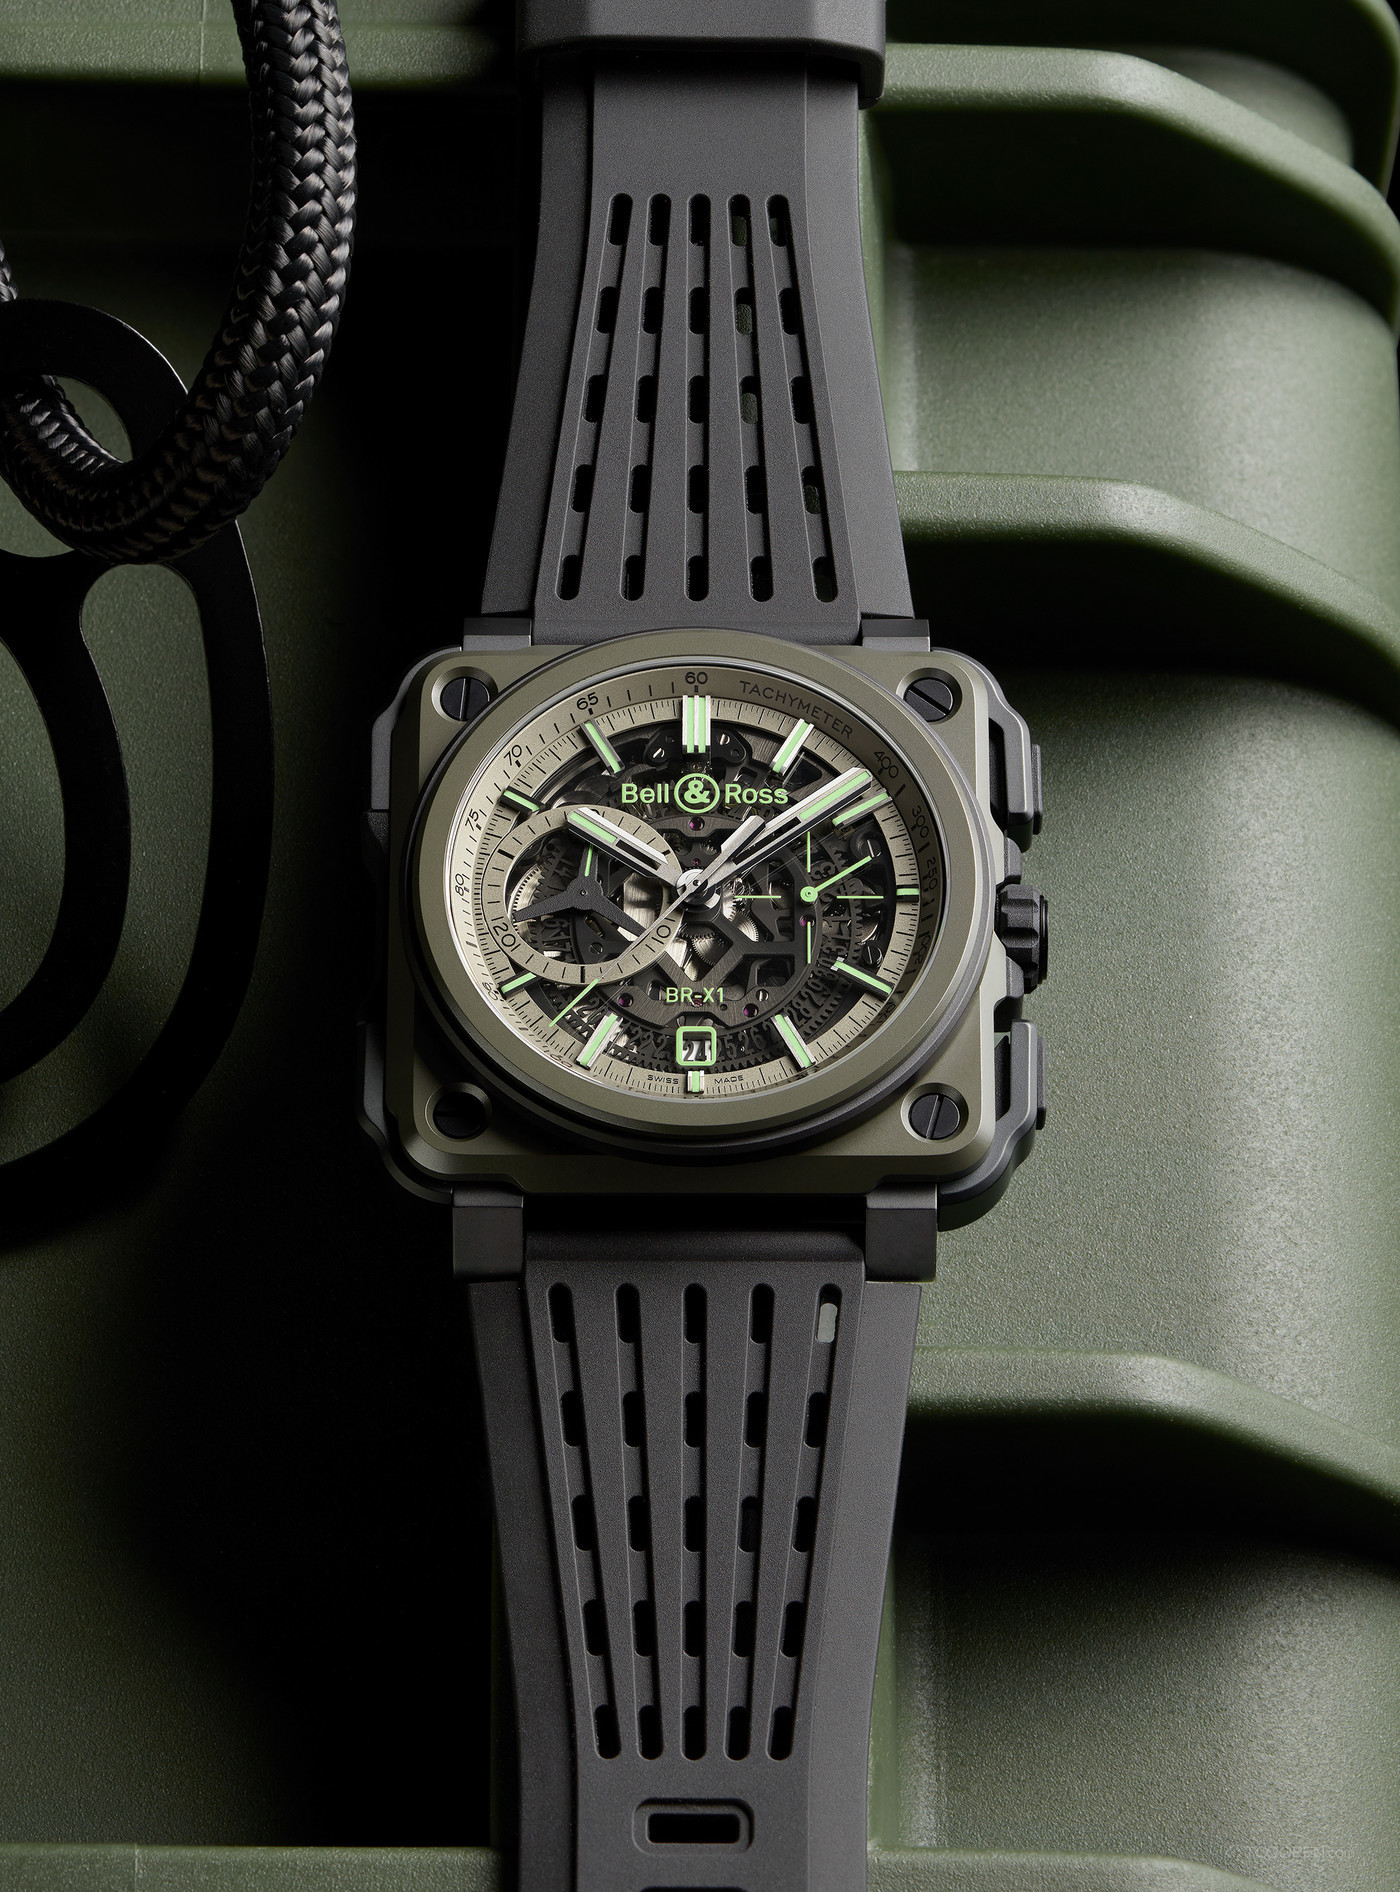 限量版柏莱士镂空计时军用手表设计欣赏-04